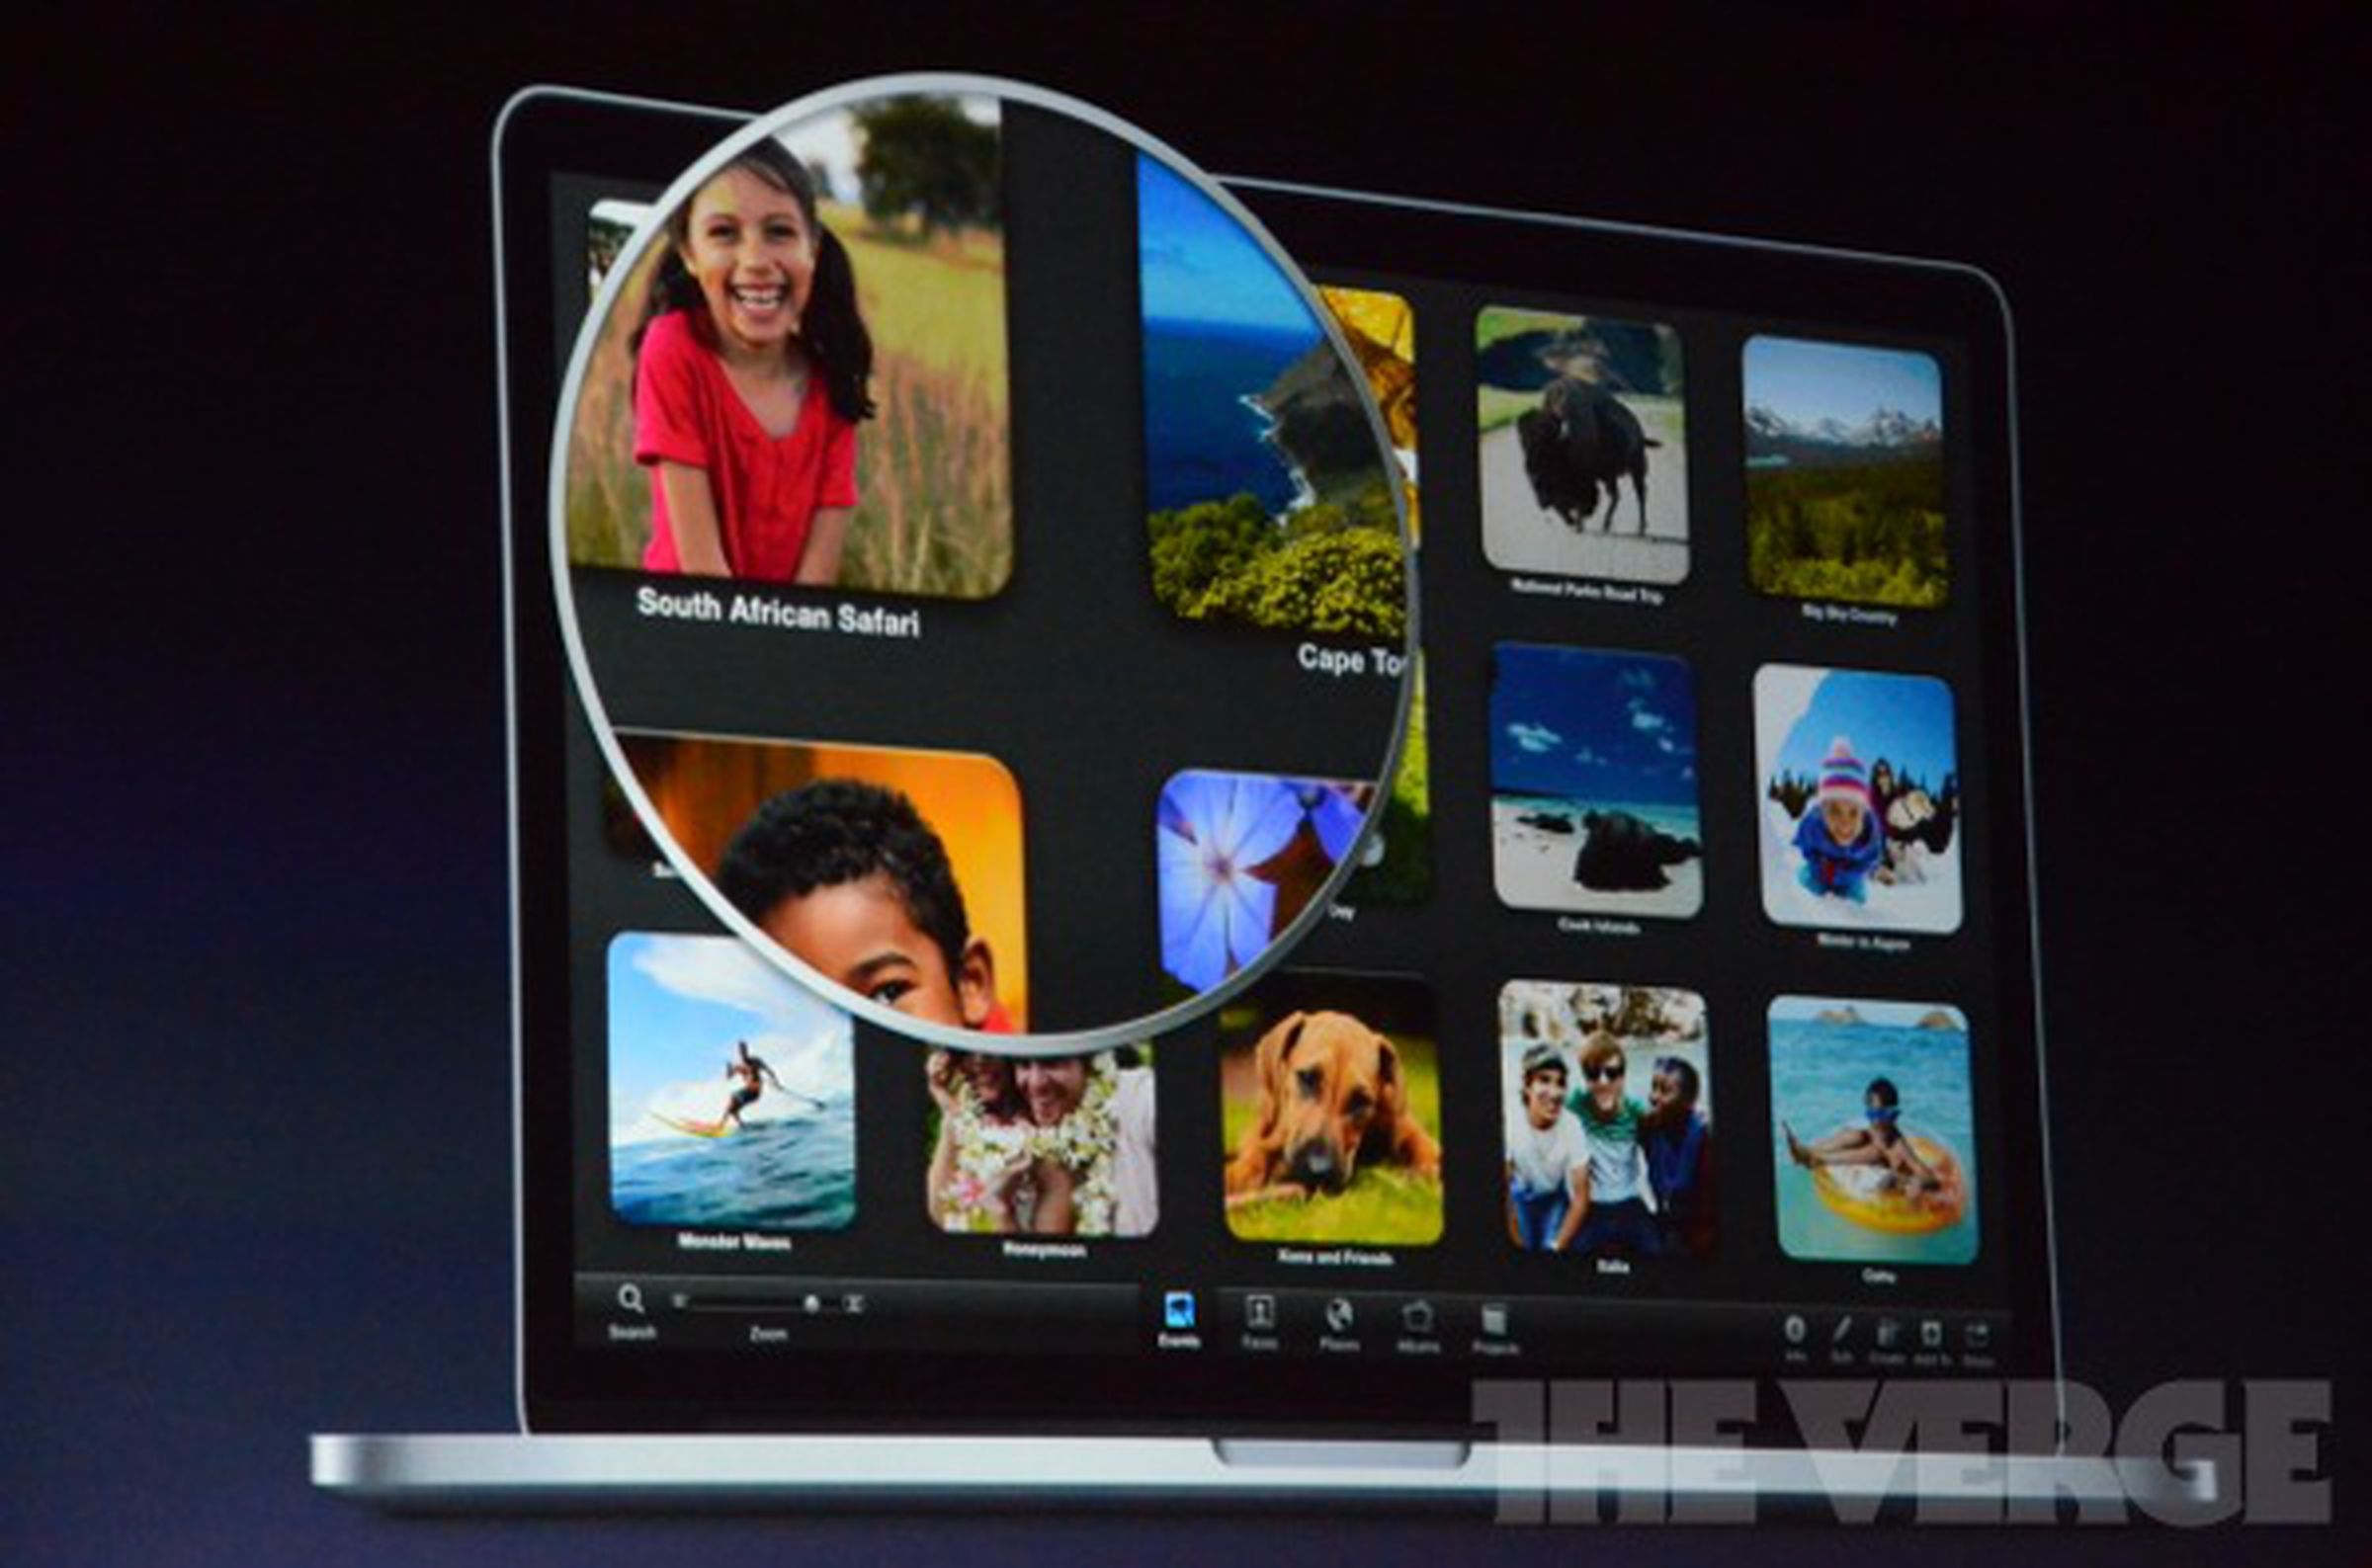 OS X retina graphics liveblog photos